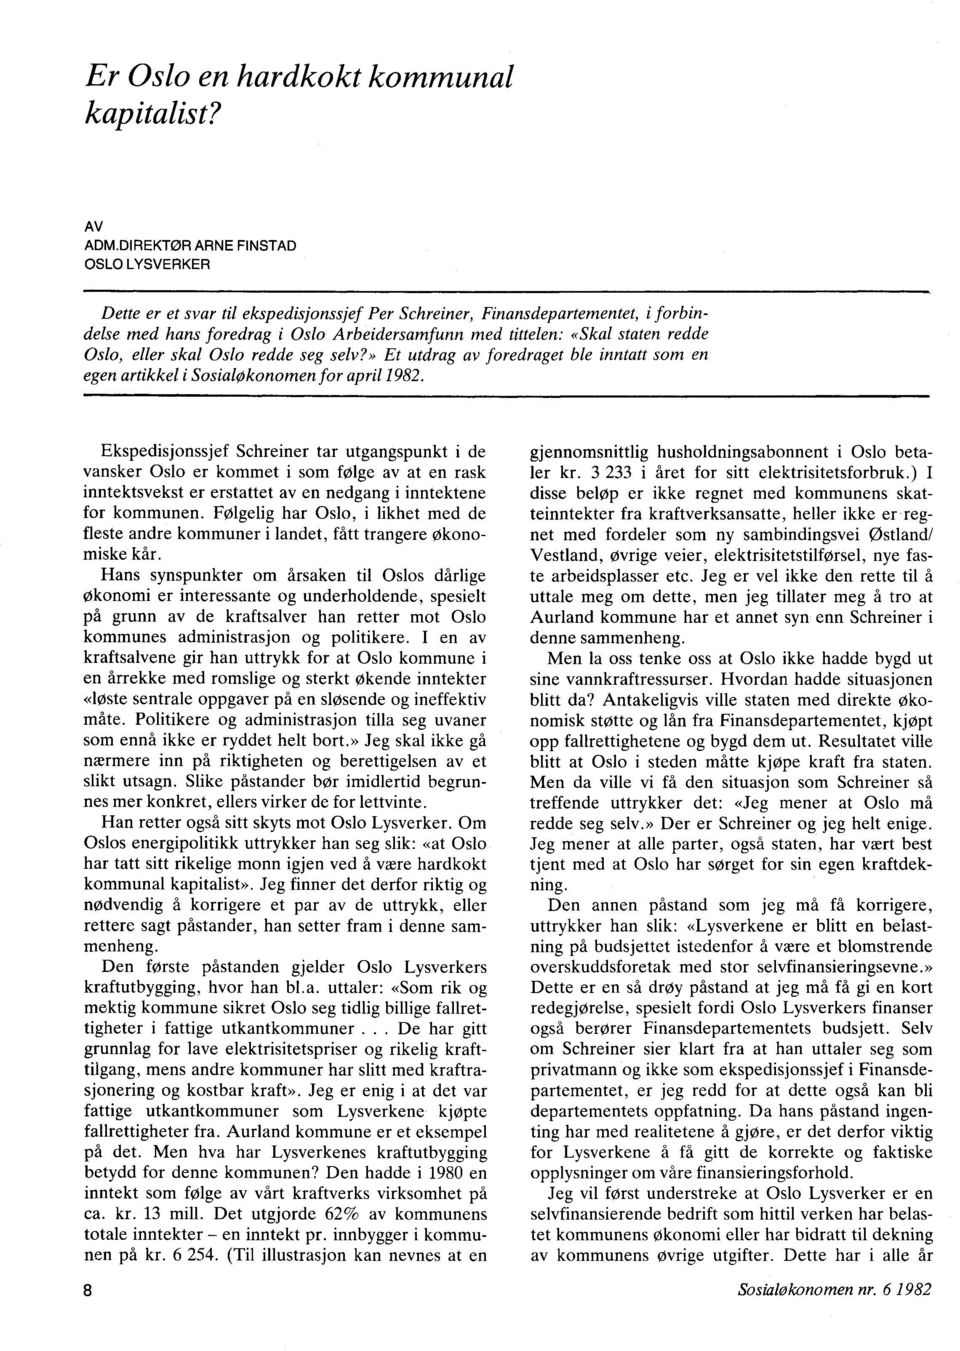 Oslo, eller skal Oslo redde seg selv?» Et utdrag av foredraget ble inntatt som en egen artikkel i Sosialøkonomen for april 1982.